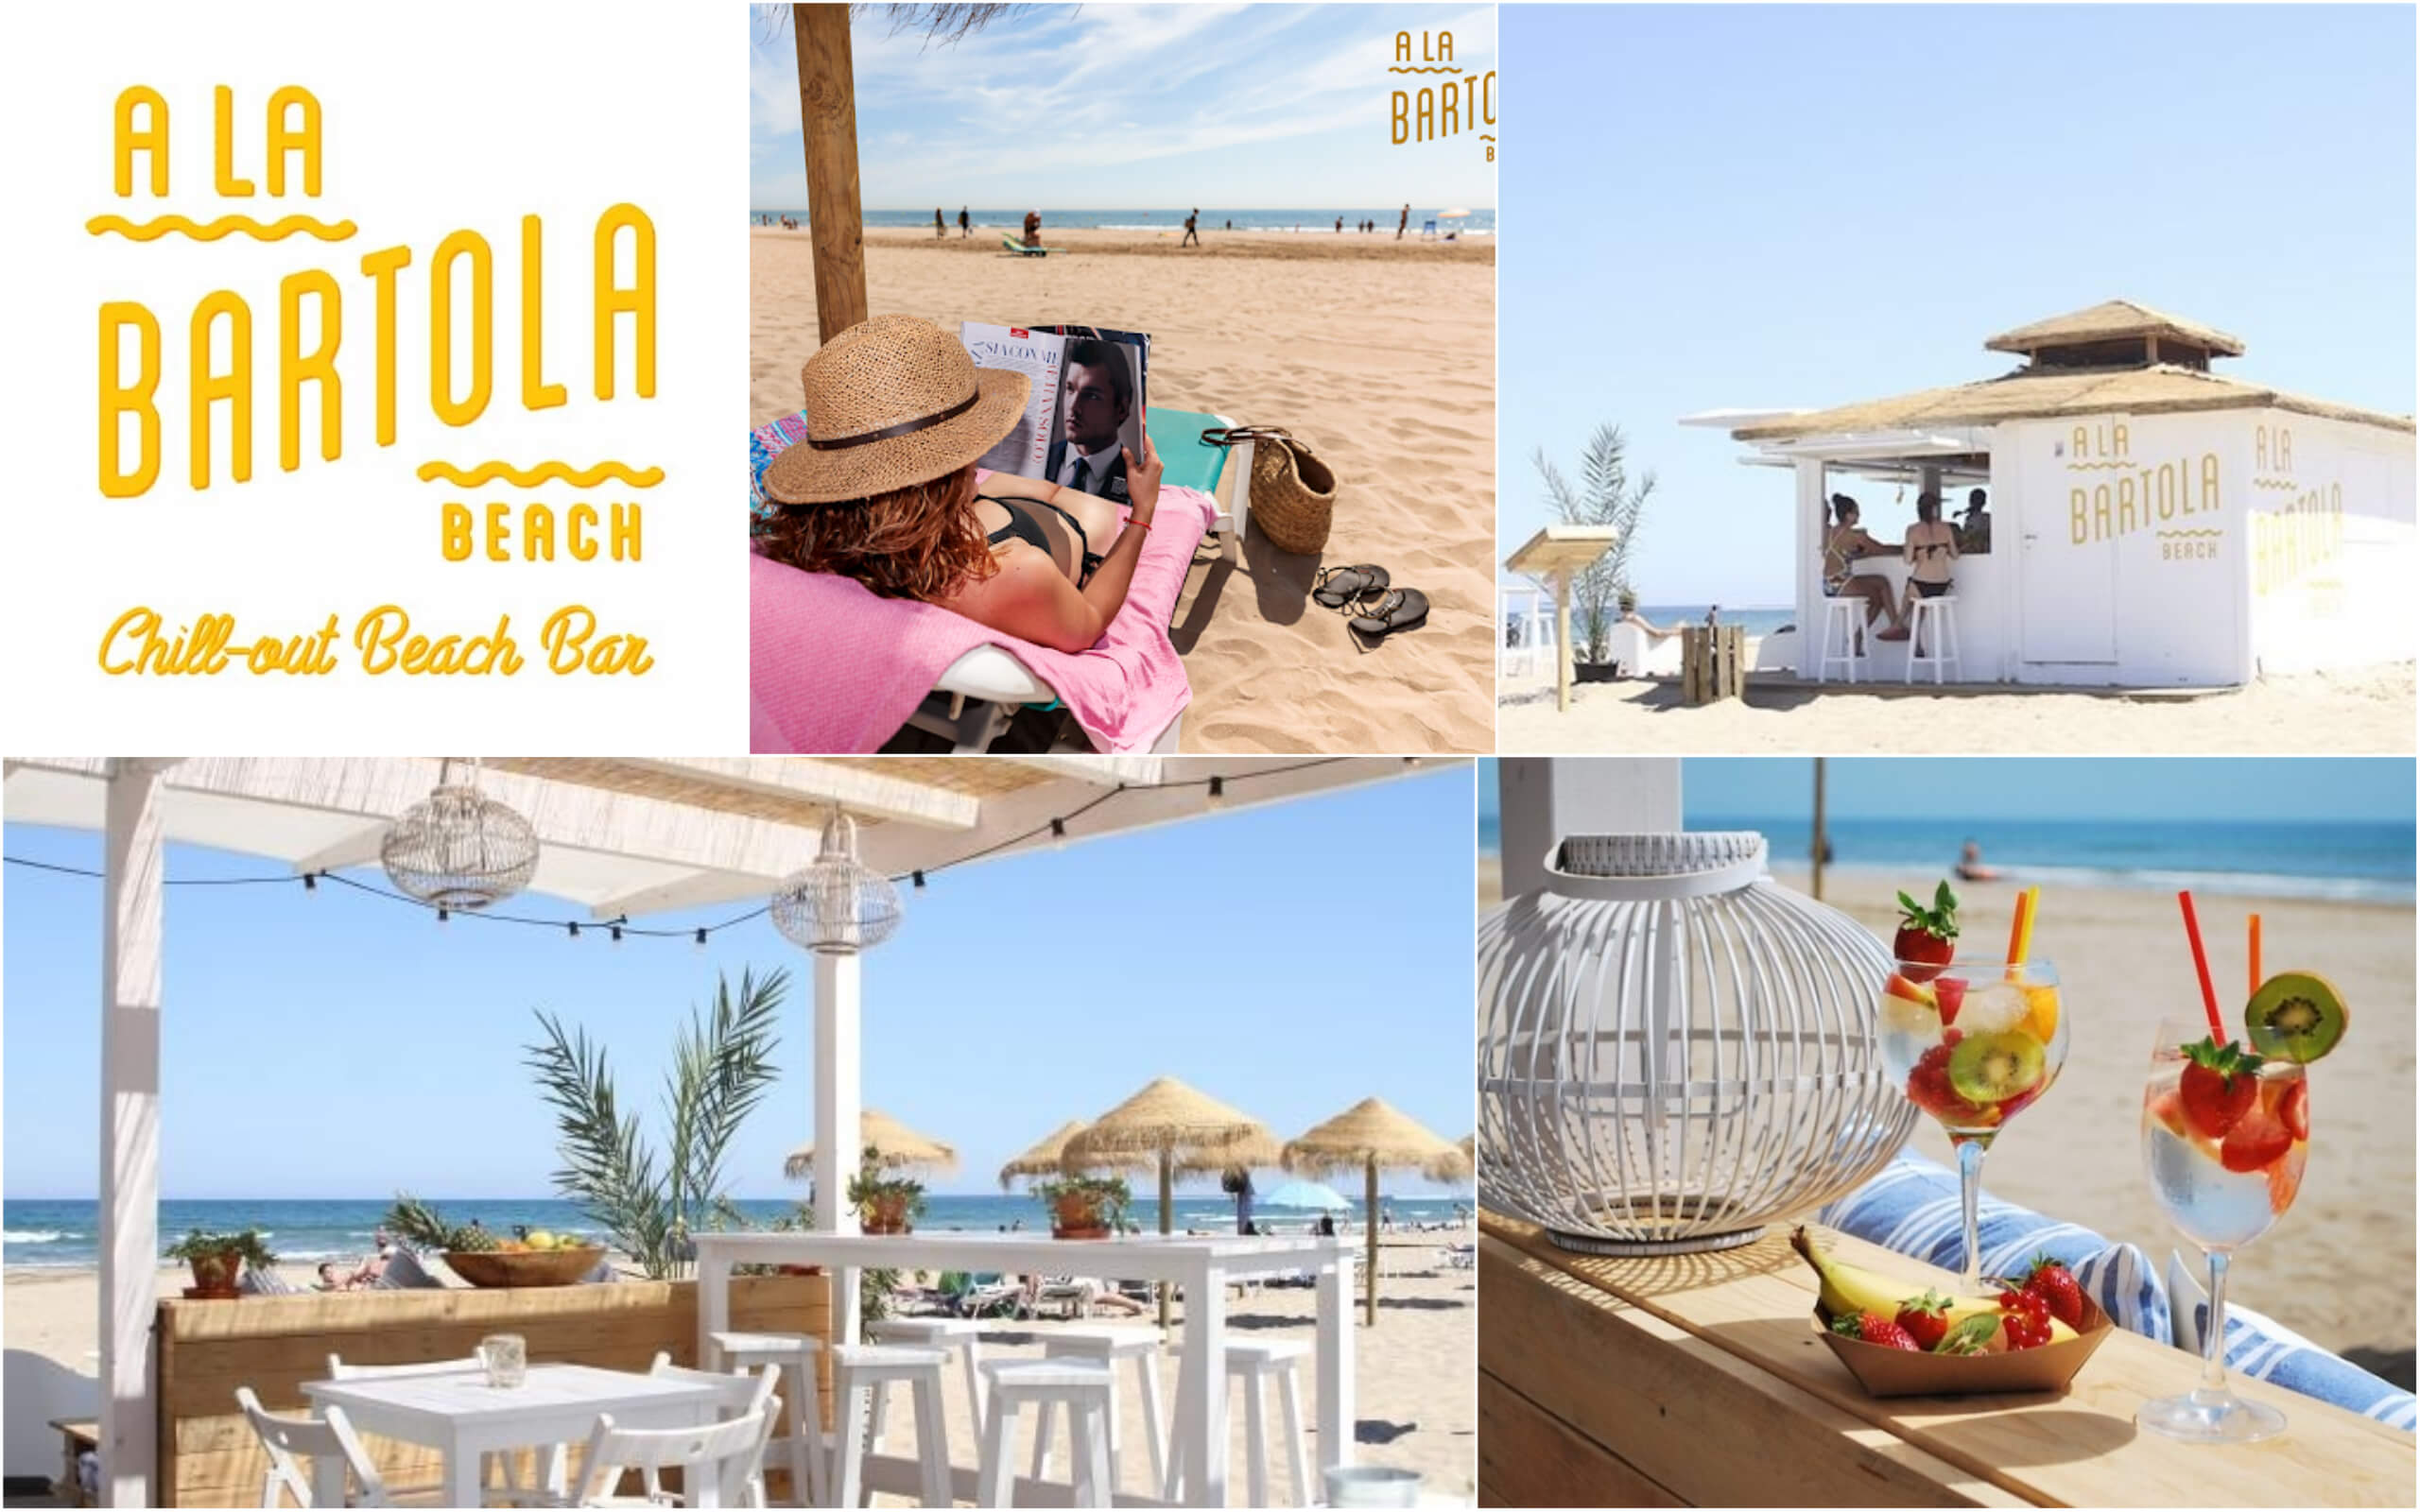 A la Bartola Beach - пляжный лаунж-бар в Валенсии, Пляжный ресторан в городе Валенсия, Лаунж бар в городе Валенсии, Ла Бартола в городе Валенсия ресторан на пляже